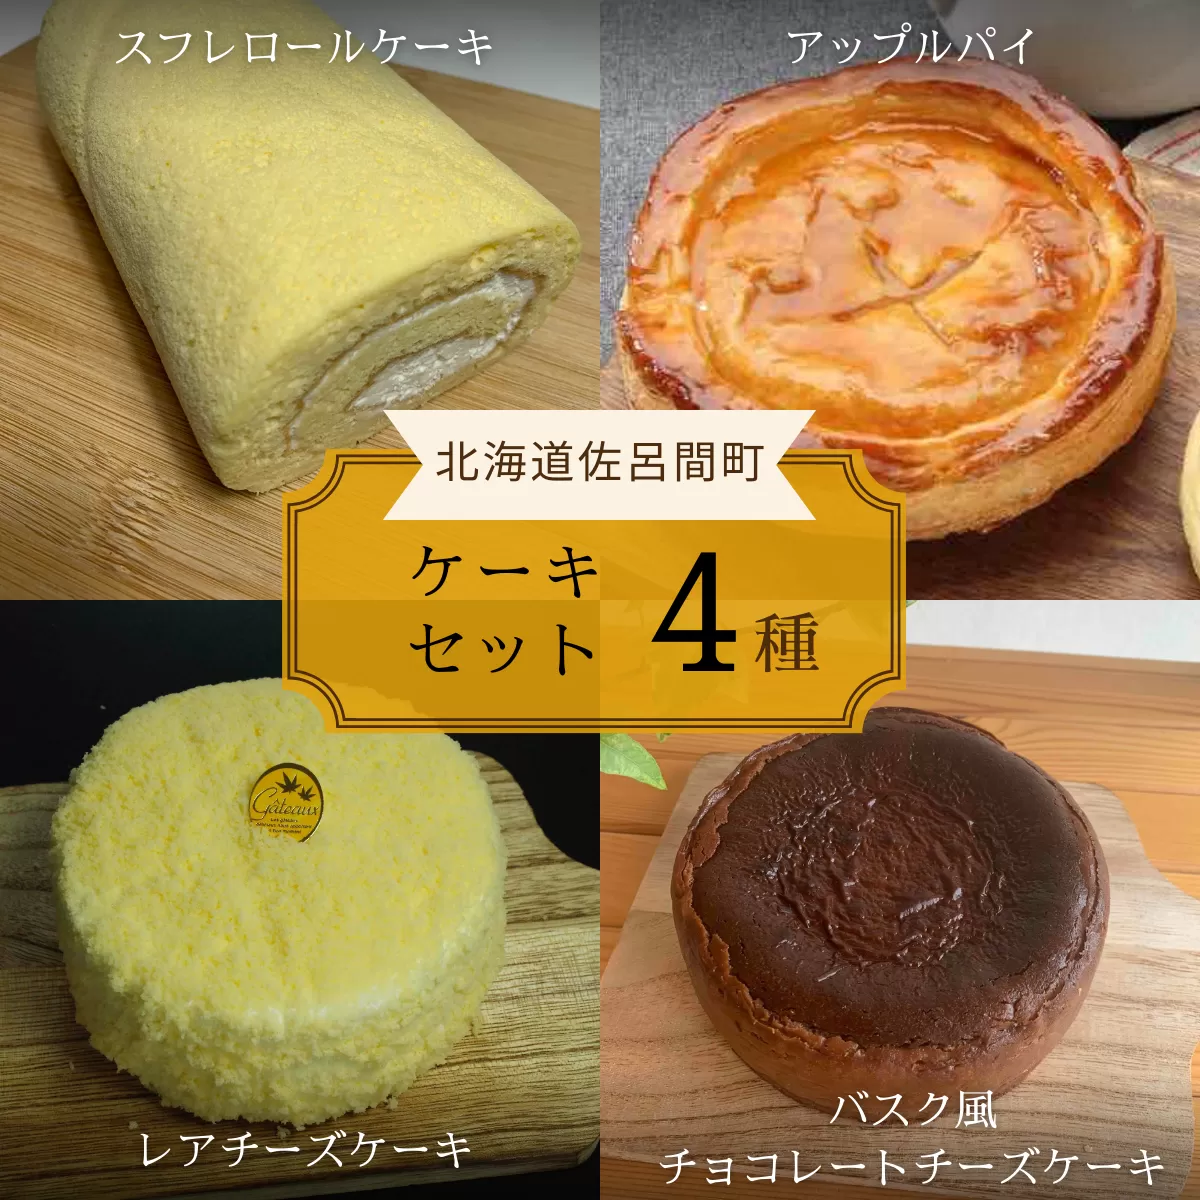 4種のケーキセット（スフレロールケーキ・アップルパイ・レアチーズケーキ・バスク風チョコレートチーズケーキ） SRMJ105